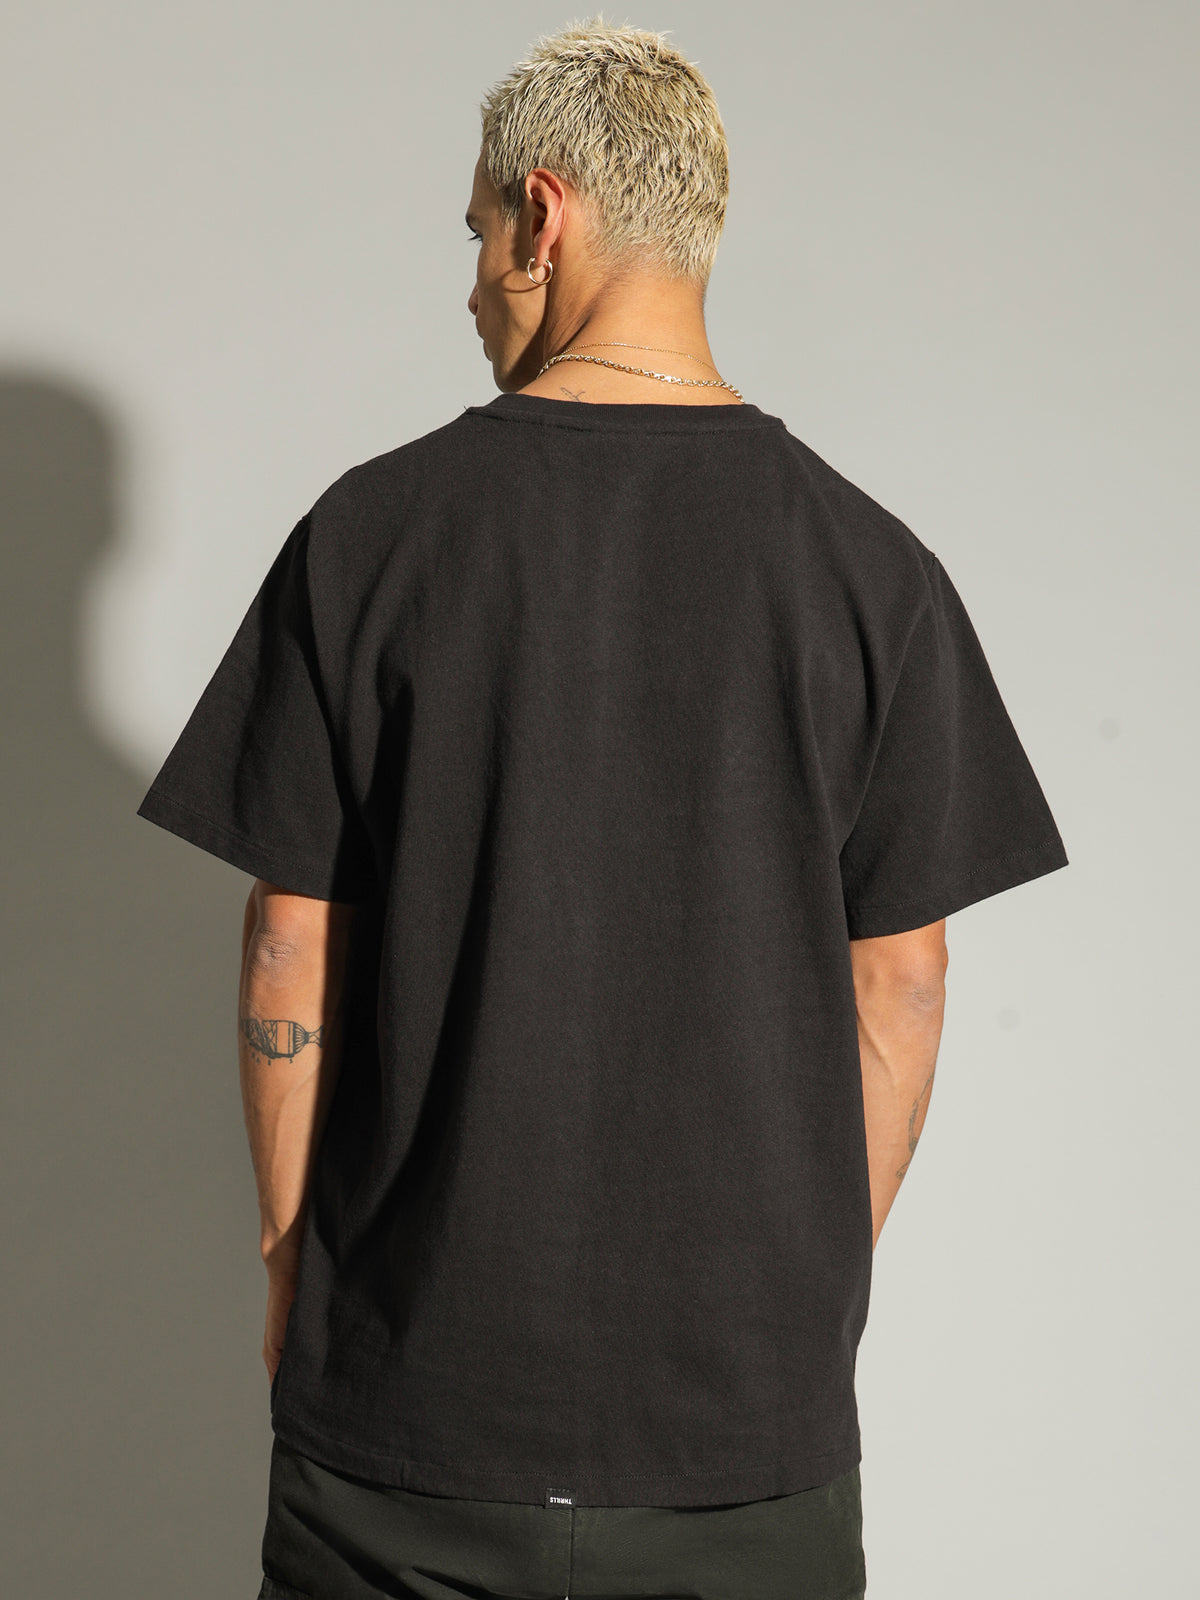 Turbulent Merch Fit T-Shirt in Black